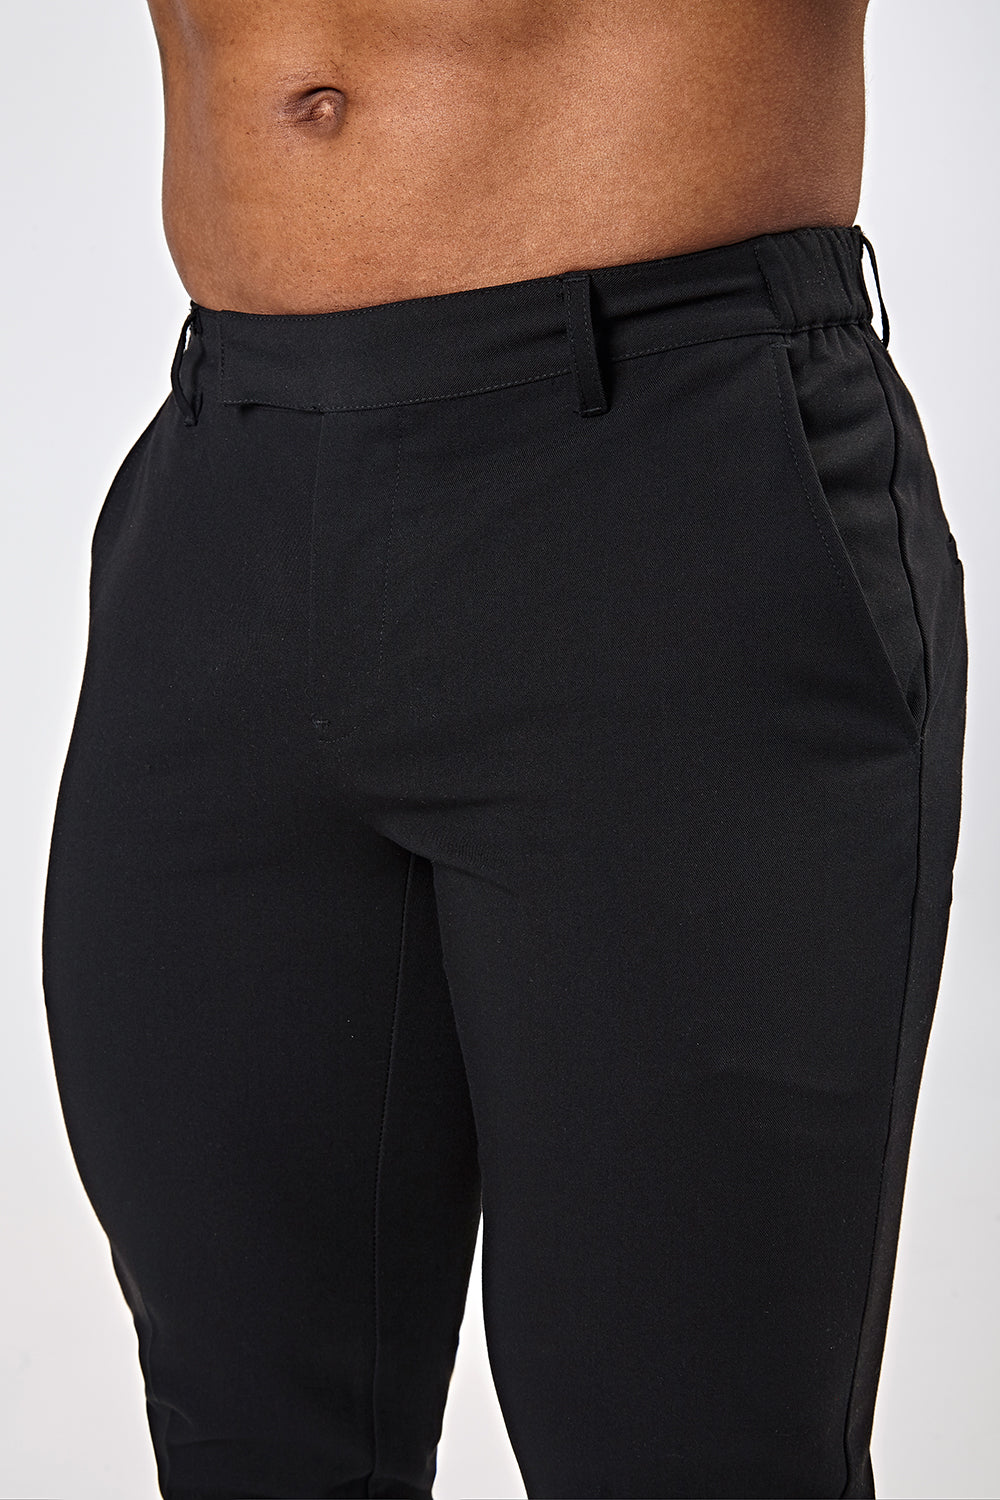 CAICJ98 Sweatpants For Men Men's Casual Pant Trouser Print Elastic Pencil  Pants Zipper Elastic Waist Pants Casual Sport Trousers Black,XL -  Walmart.com